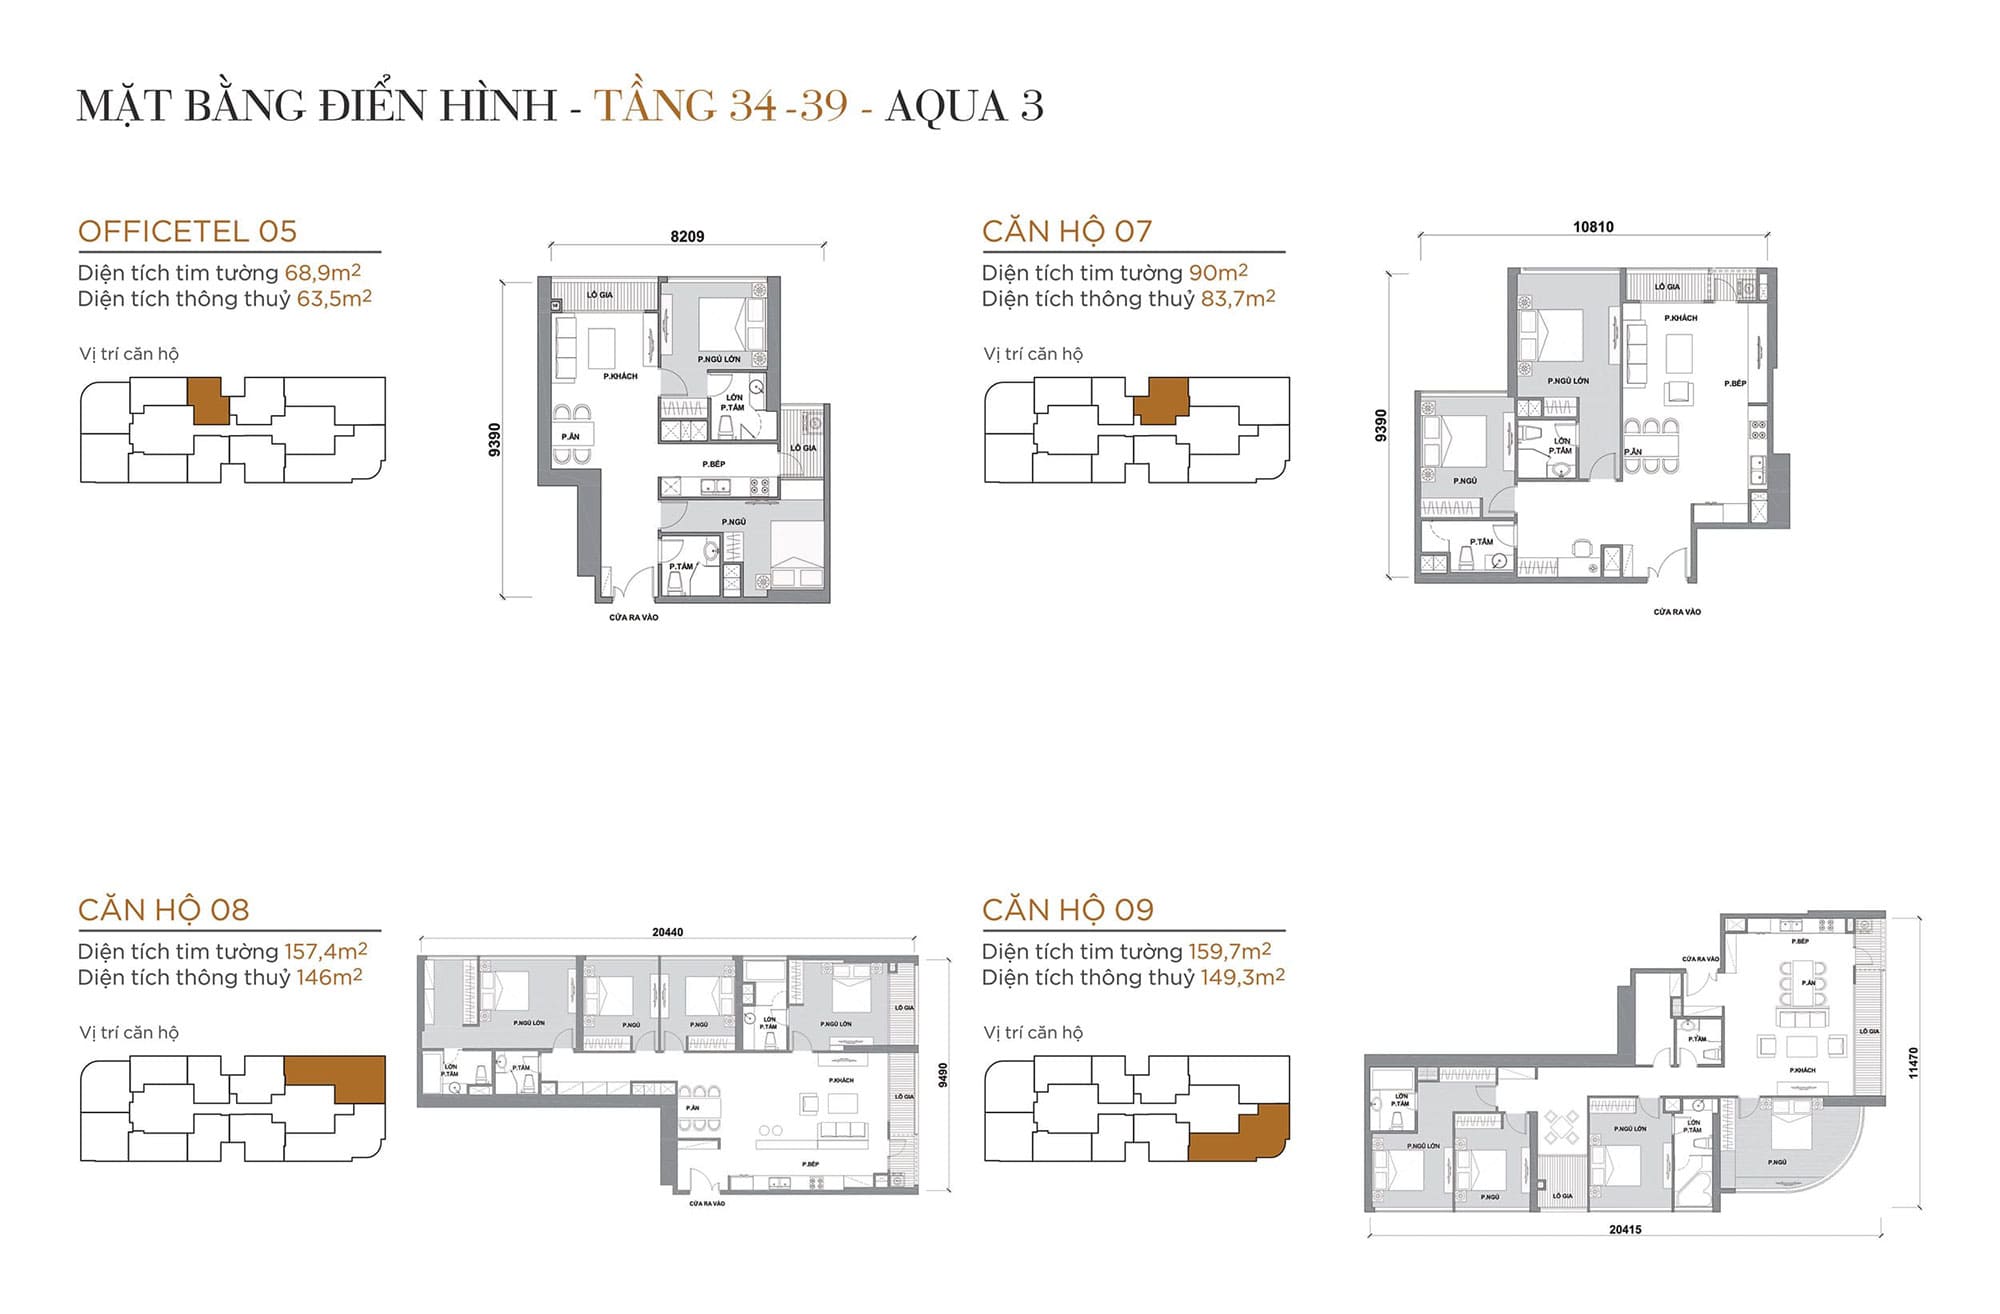 Layout căn hộ tầng 34 đến tầng 39 tòa Aqua 3 loại Officetel 05, Căn hộ 07, Căn hộ 08, Căn hộ 09.